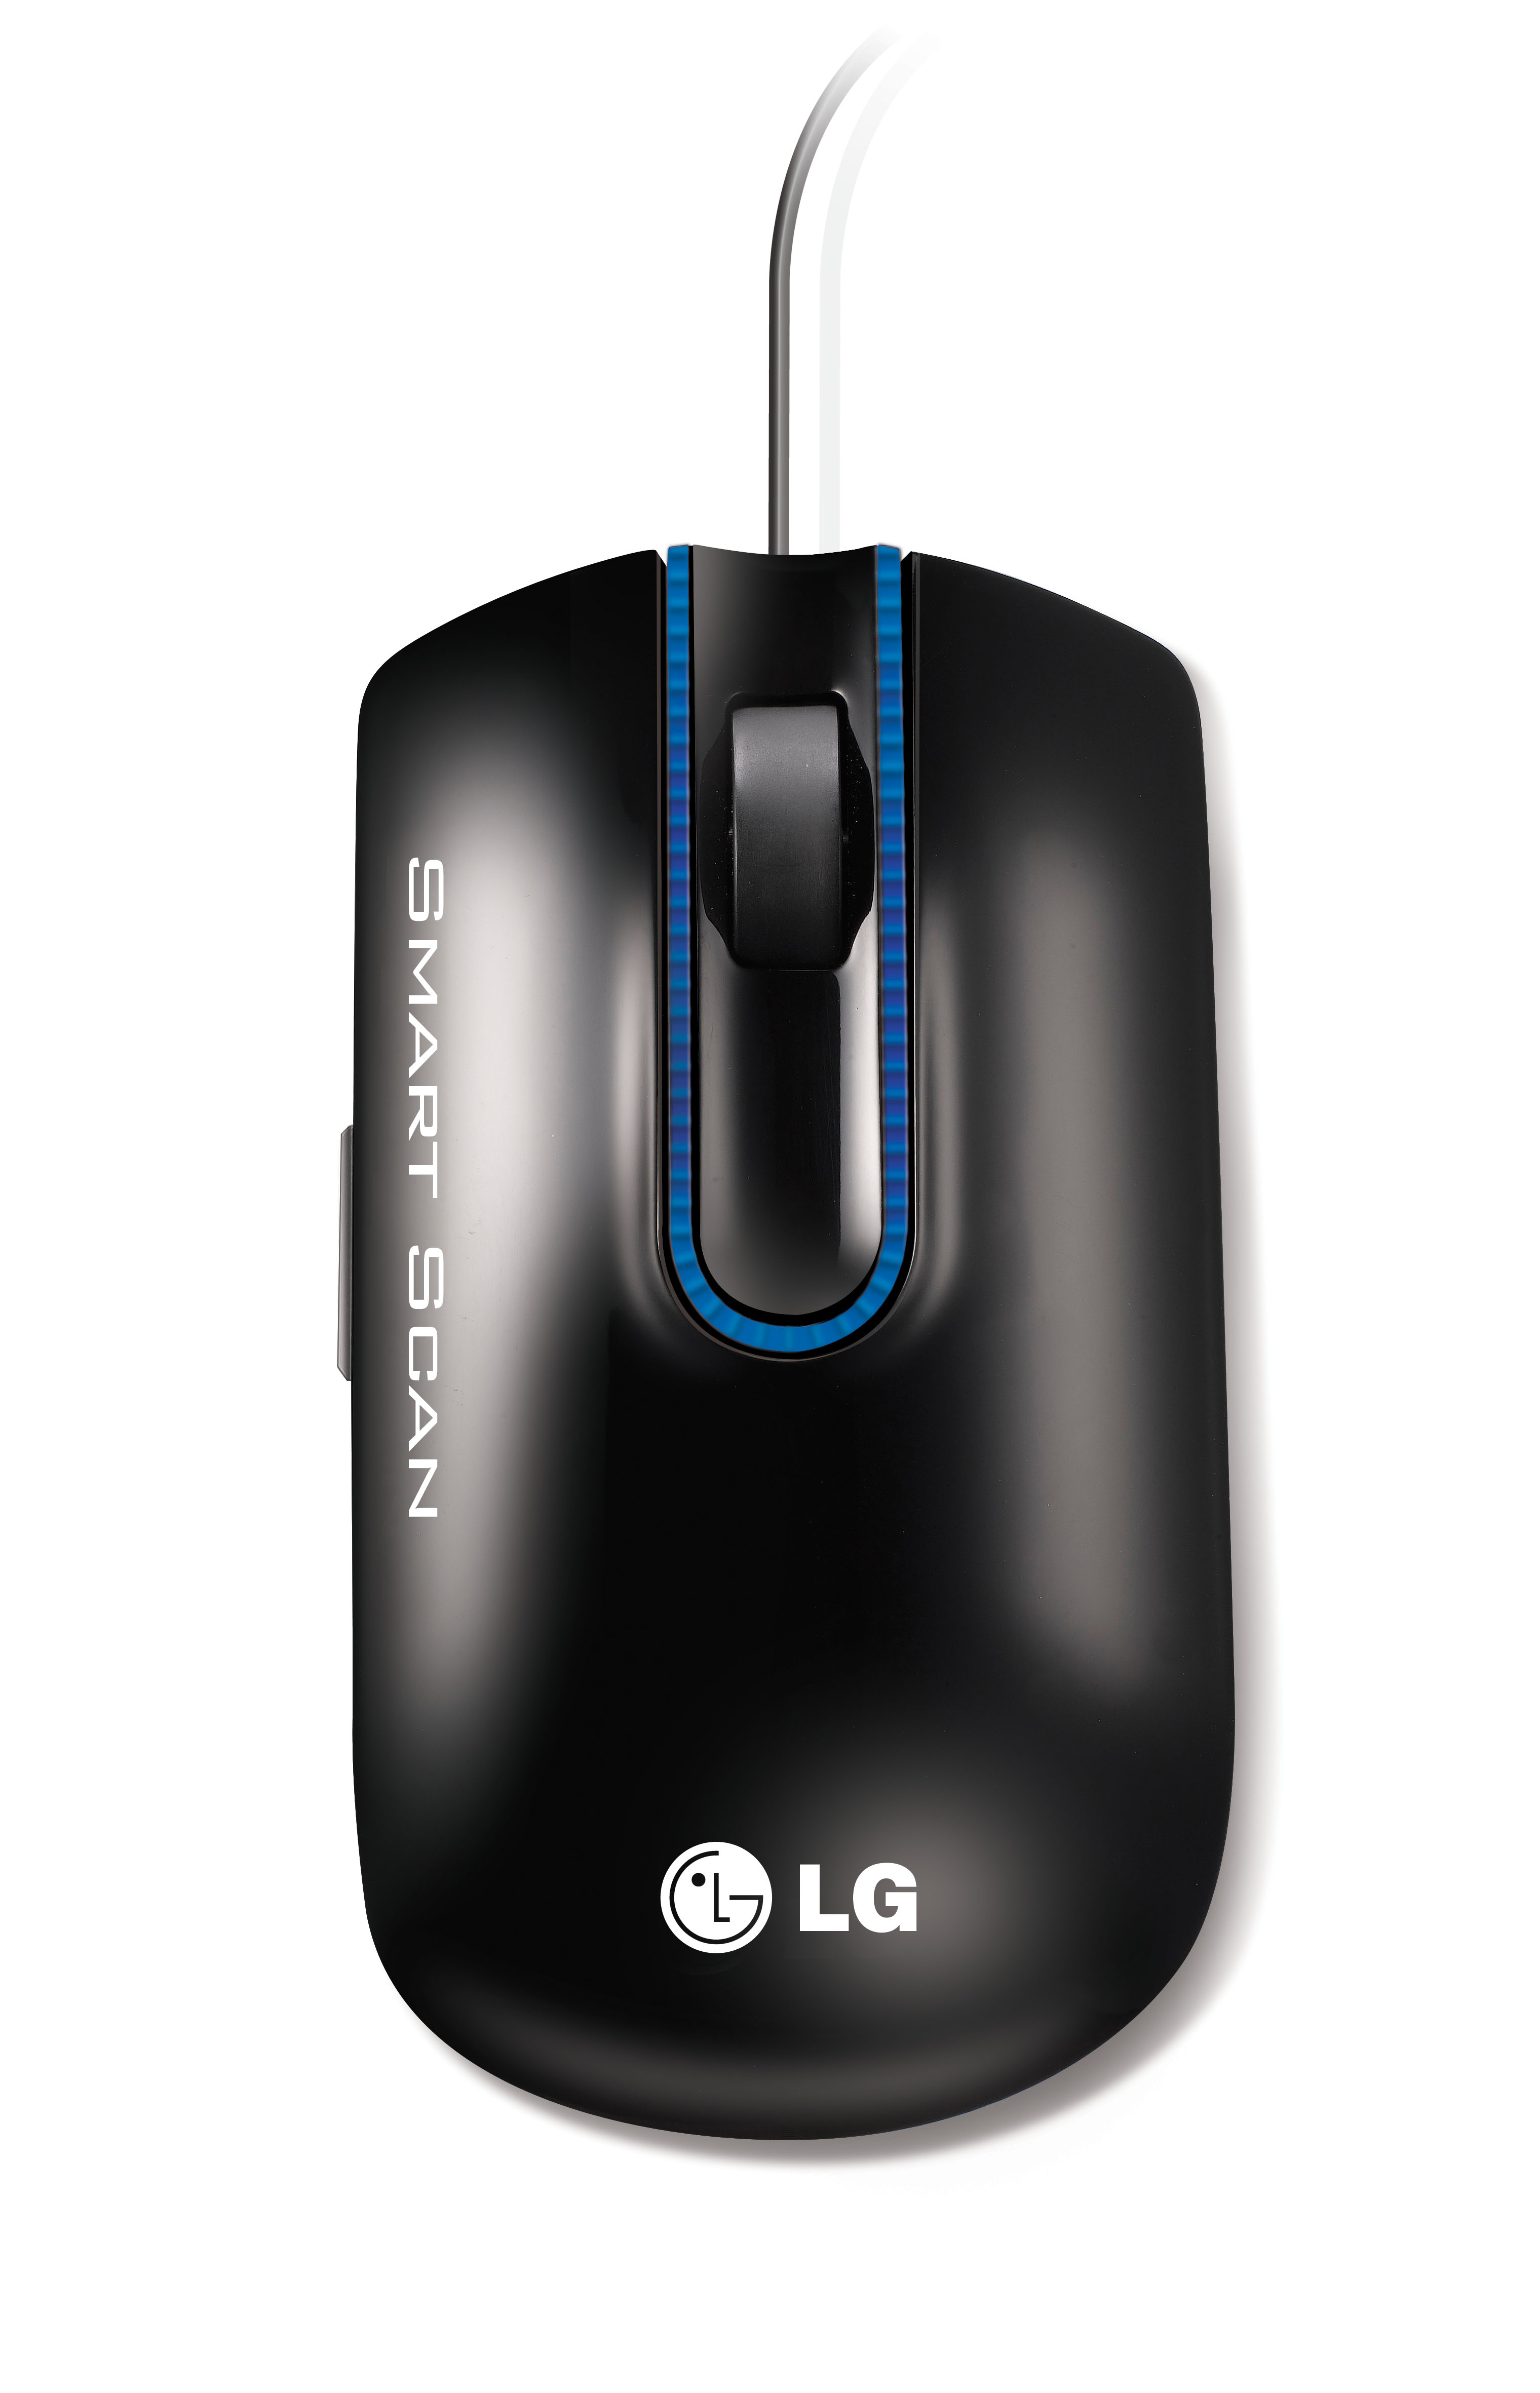 Портативный сканер-мышь LG LSM-100 MCL1ULNGE